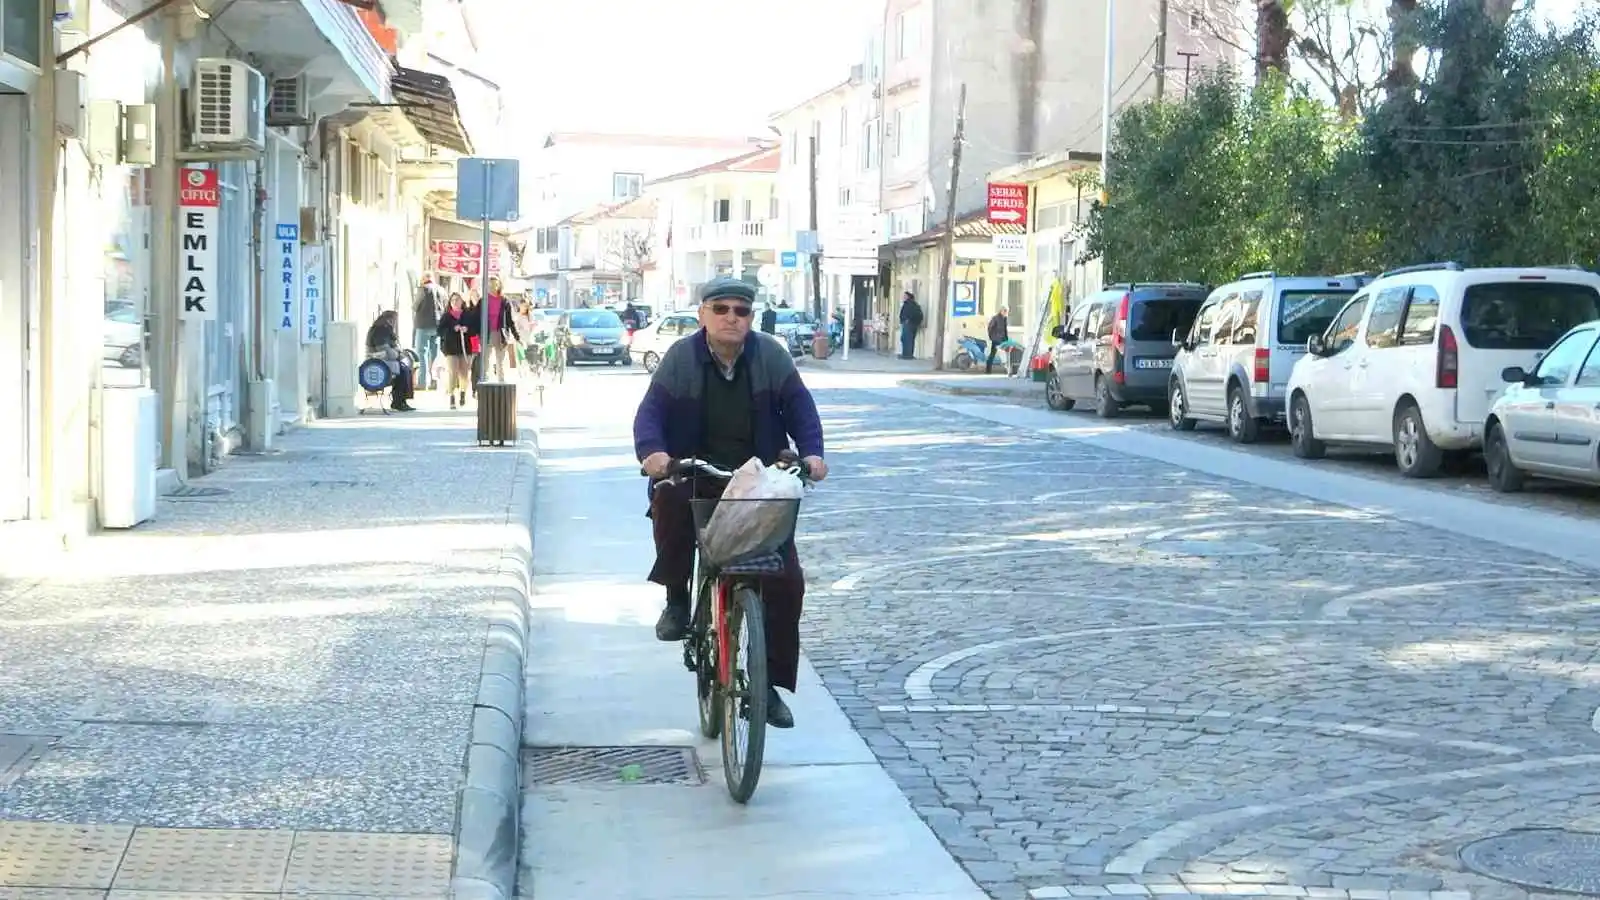 Ula'da 7'den 70'e vatandaşlar bisiklet kullanıyor
